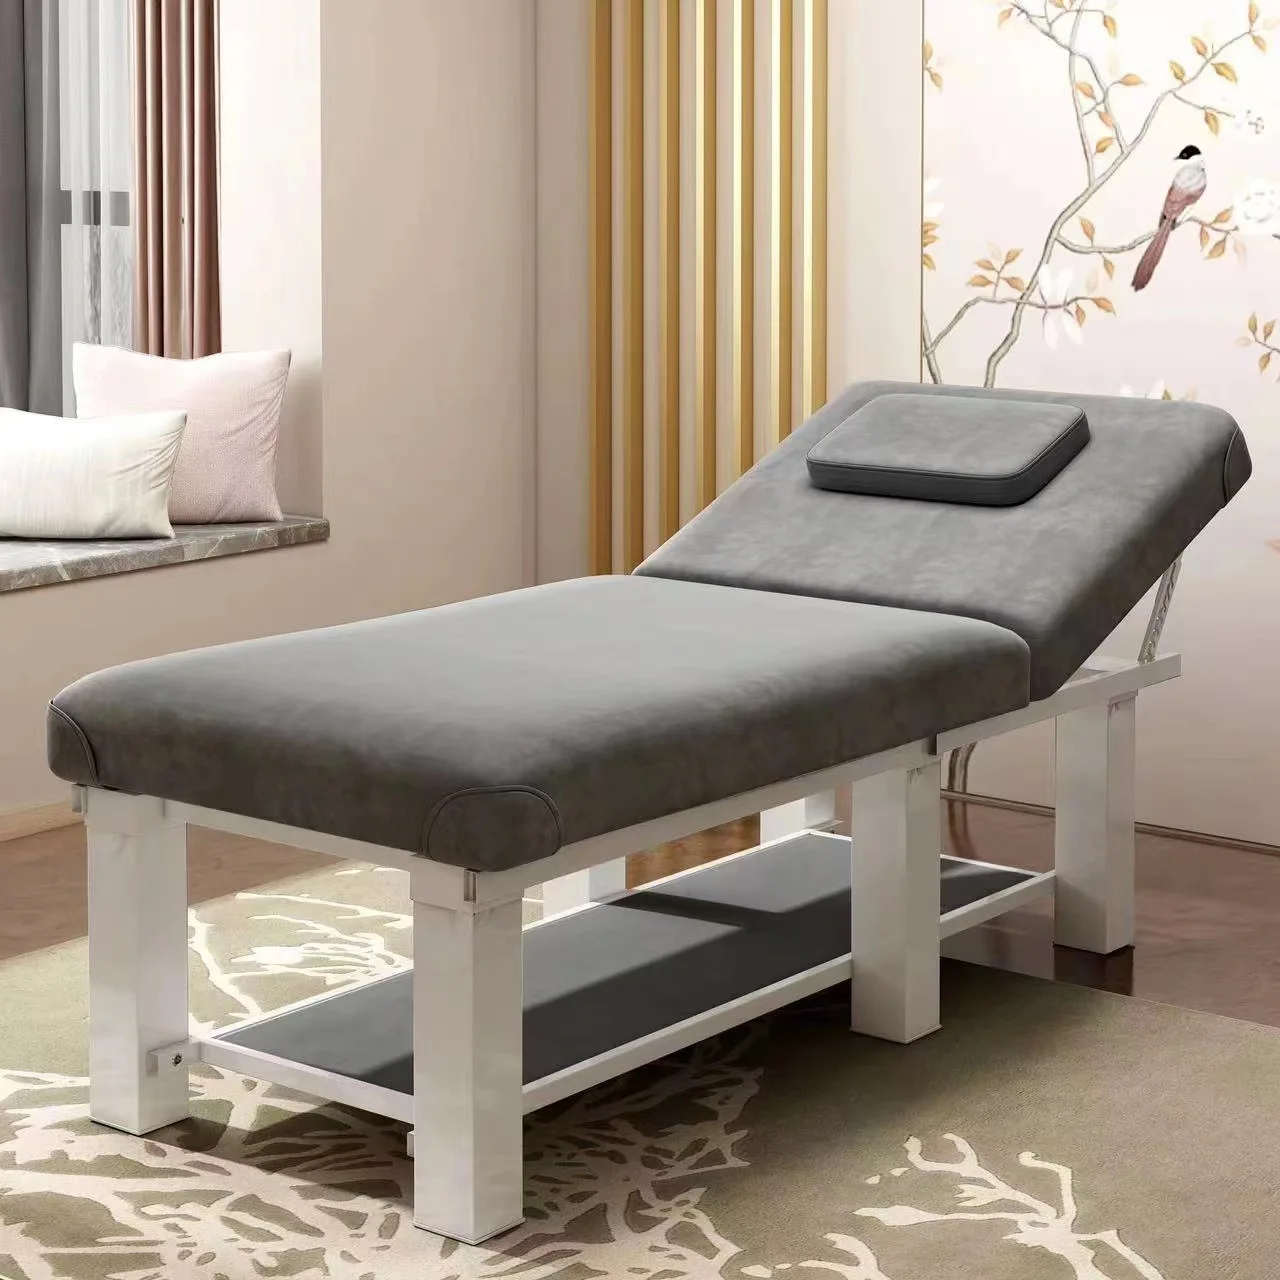 Lepota postelj, masažnih miz, kozmetični saloni, specializirana masaža postelj, doma fizikalne terapije z luknjo vzorci, vezenje postelj, e